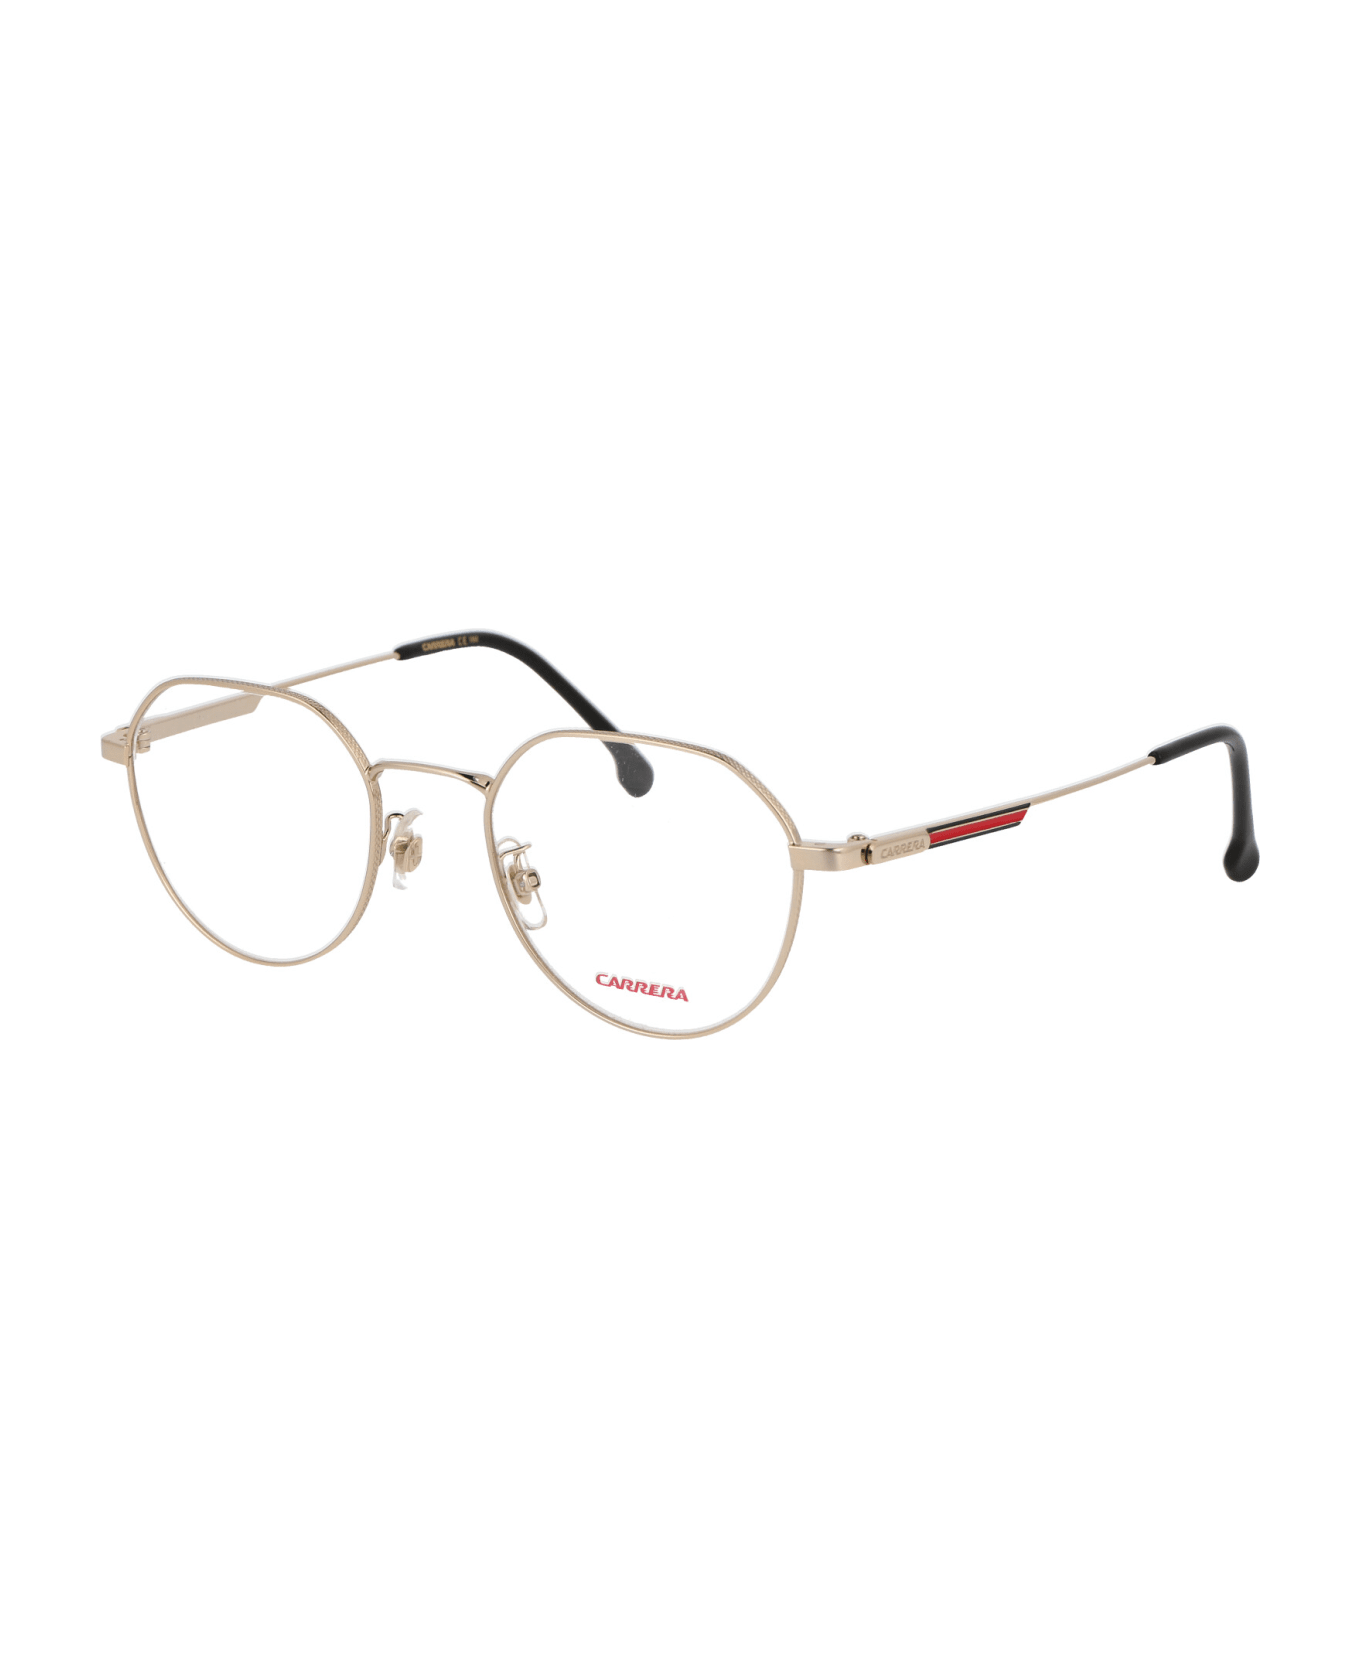 Carrera 1117/g Glasses - J5G GOLD アイウェア